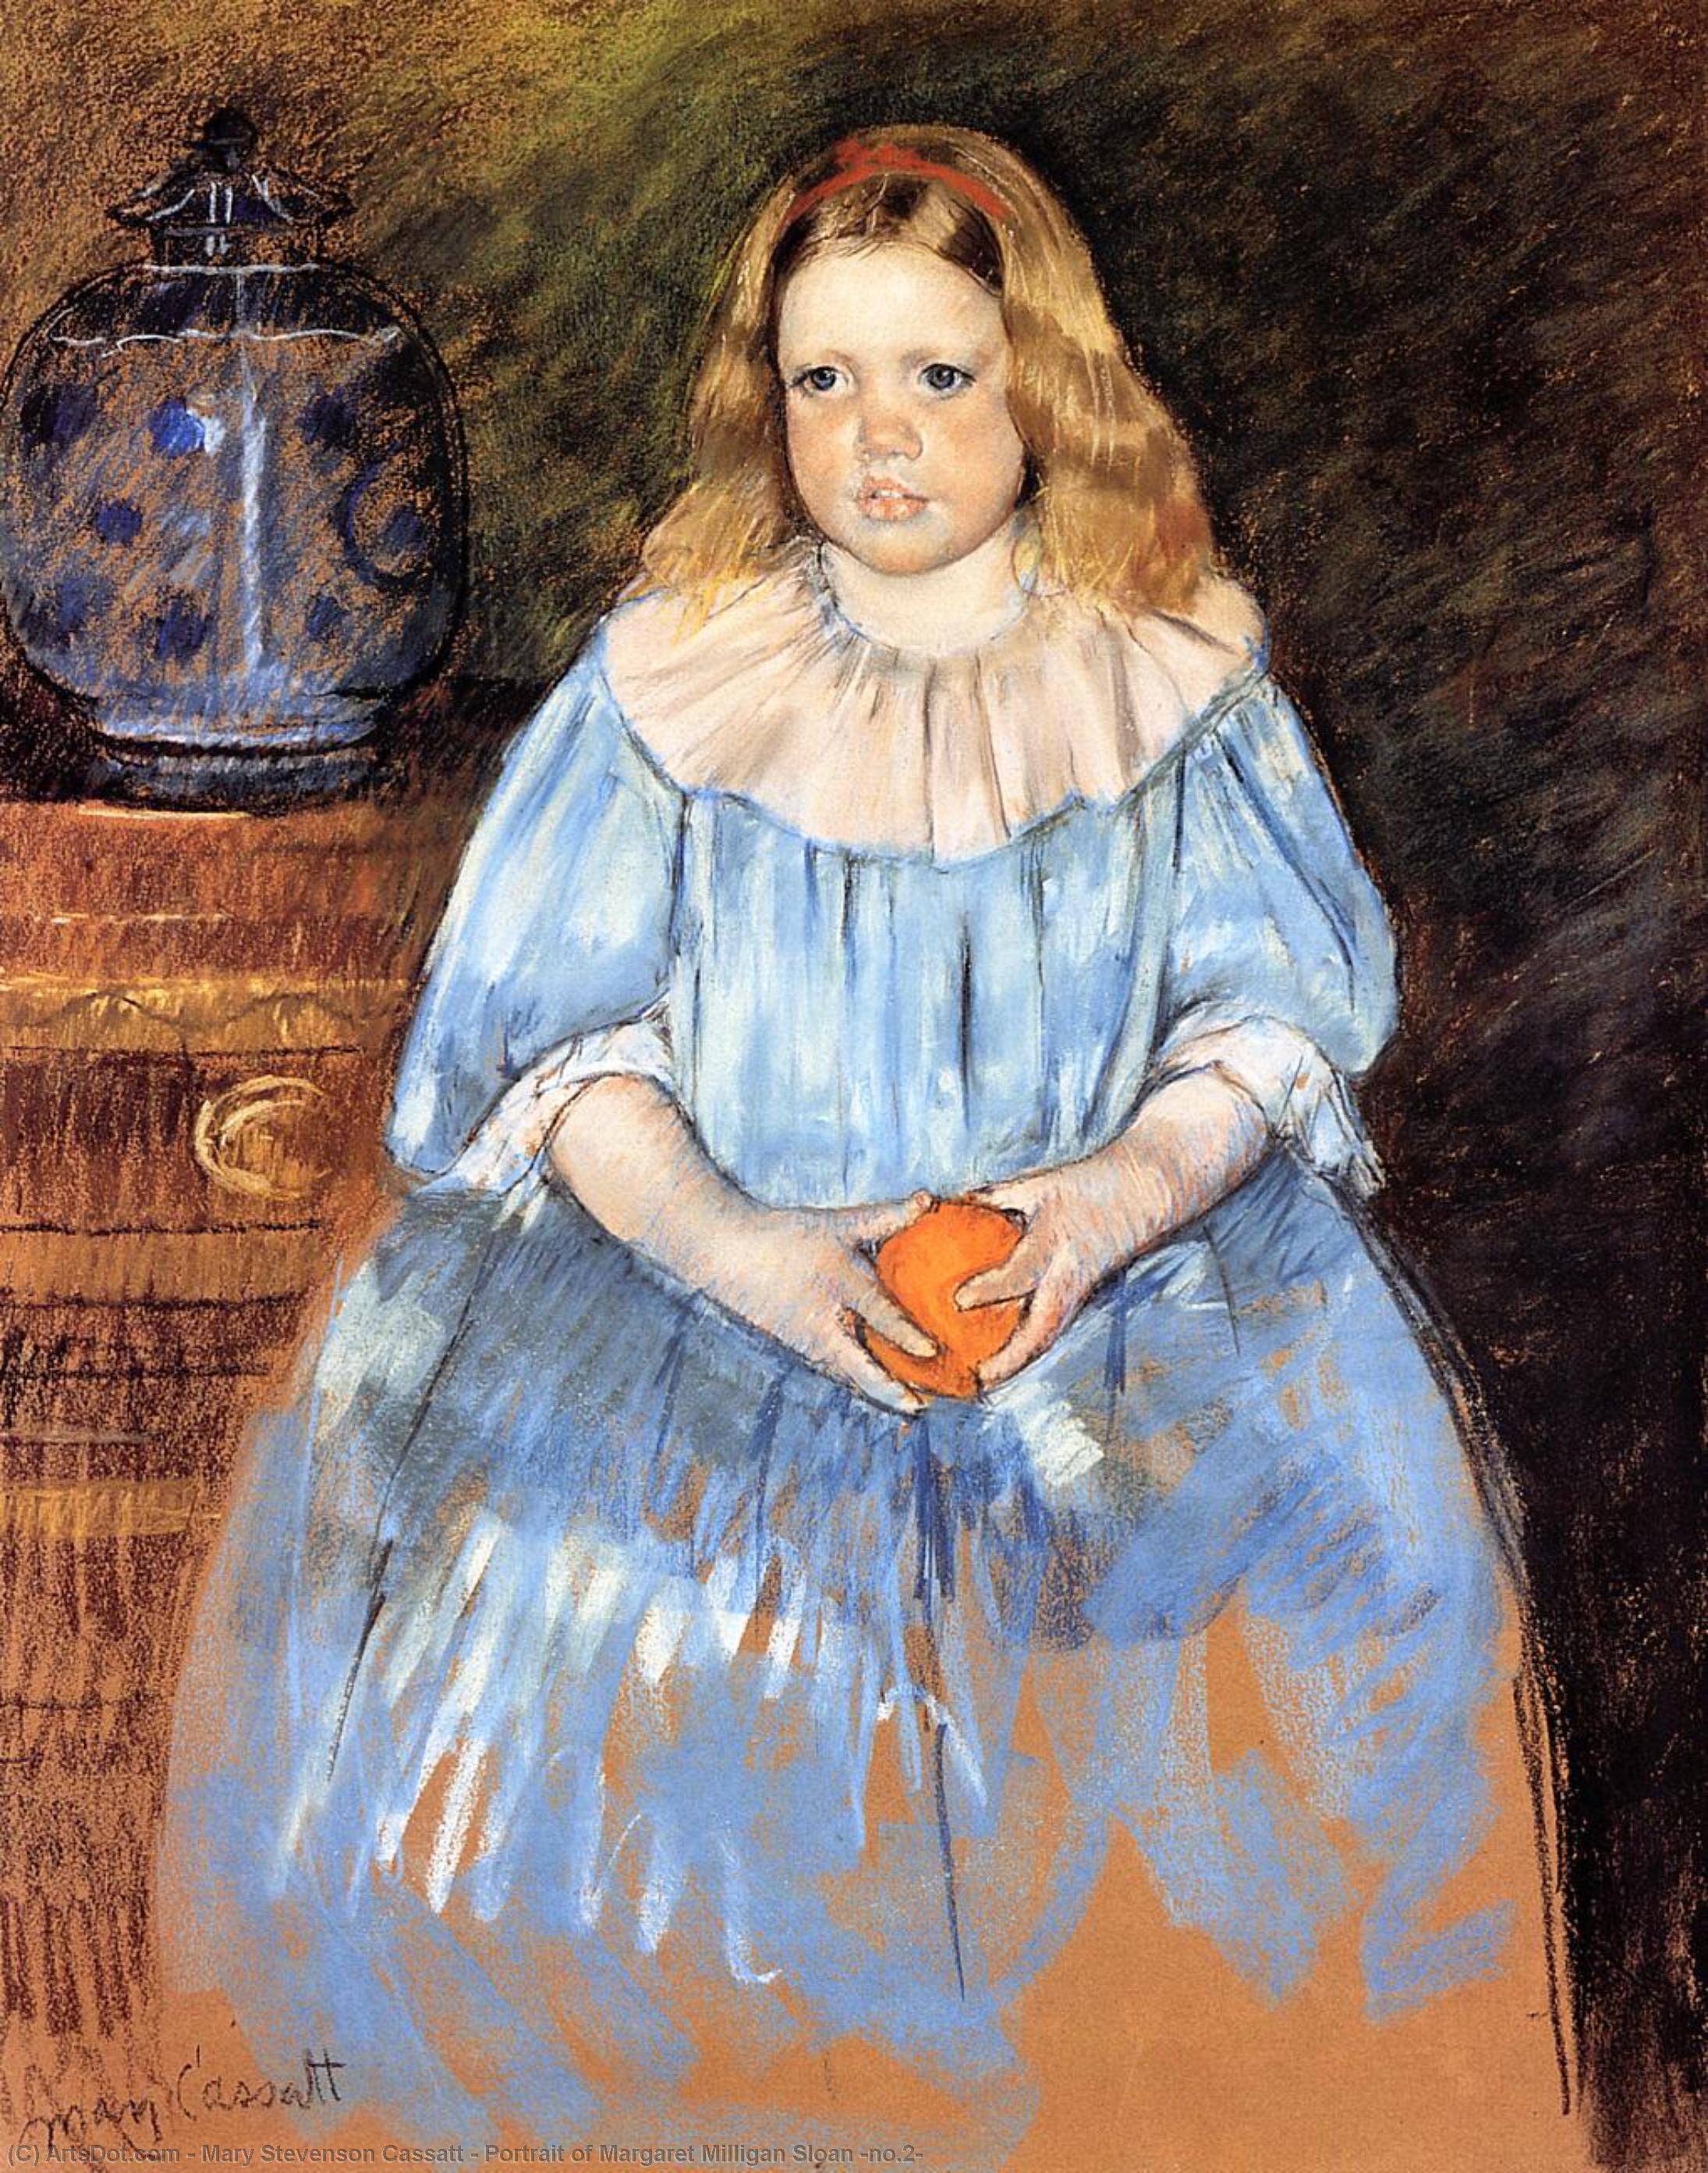 WikiOO.org - Encyclopedia of Fine Arts - Målning, konstverk Mary Stevenson Cassatt - Portrait of Margaret Milligan Sloan (no.2)